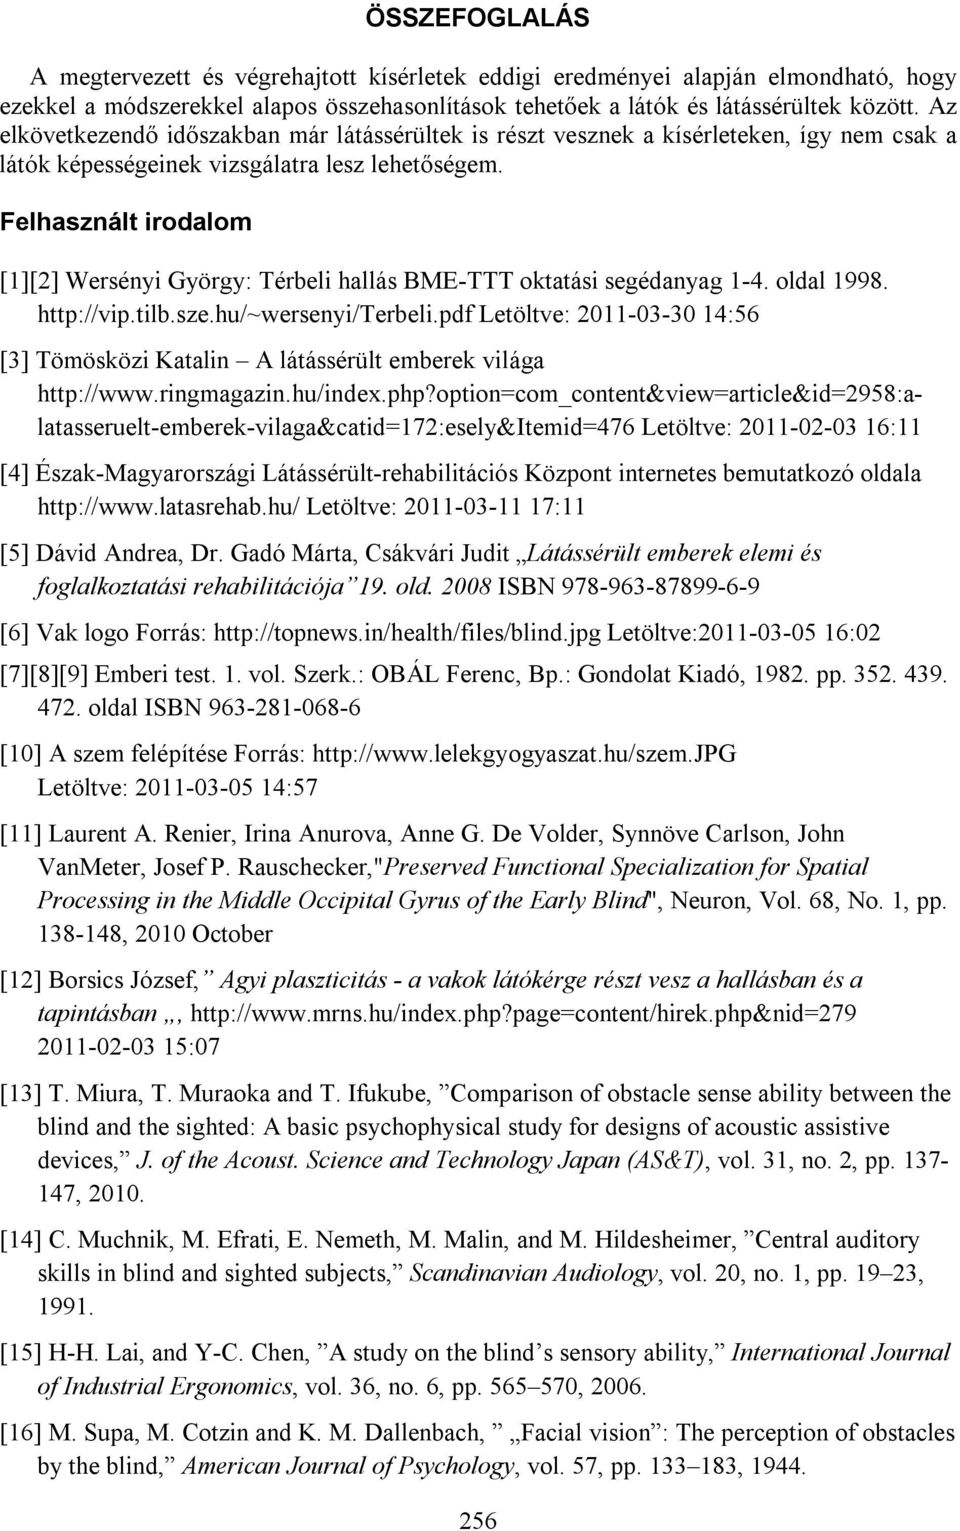 Felhasznált irodalom [1][2] Wersényi György: Térbeli hallás BME-TTT oktatási segédanyag 1-4. oldal 1998. http://vip.tilb.sze.hu/~wersenyi/terbeli.